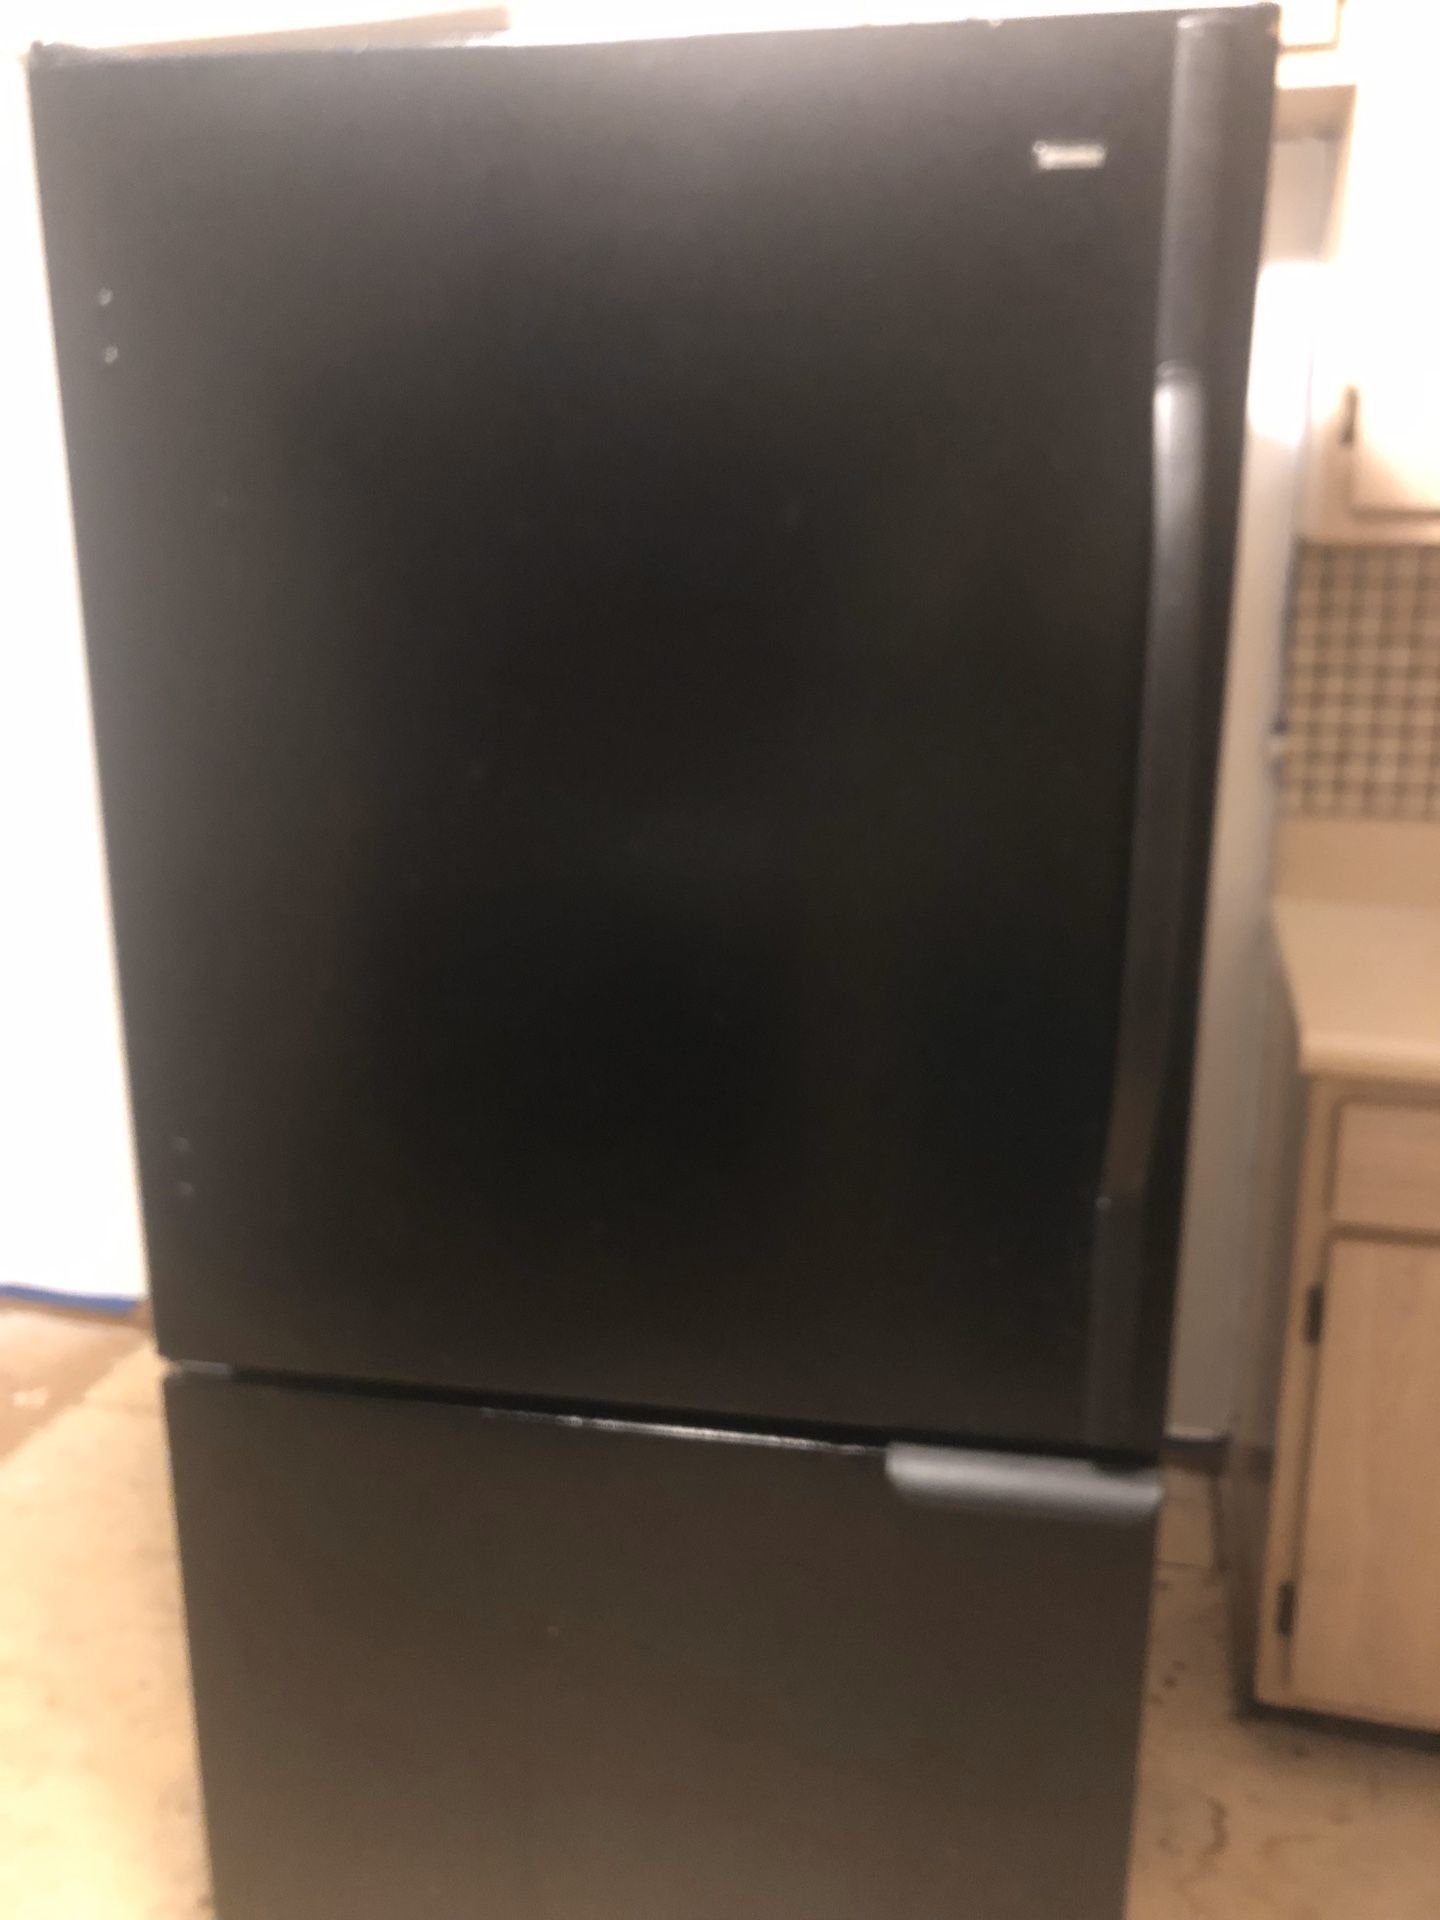 Kenmore bottom freezer refrigerator